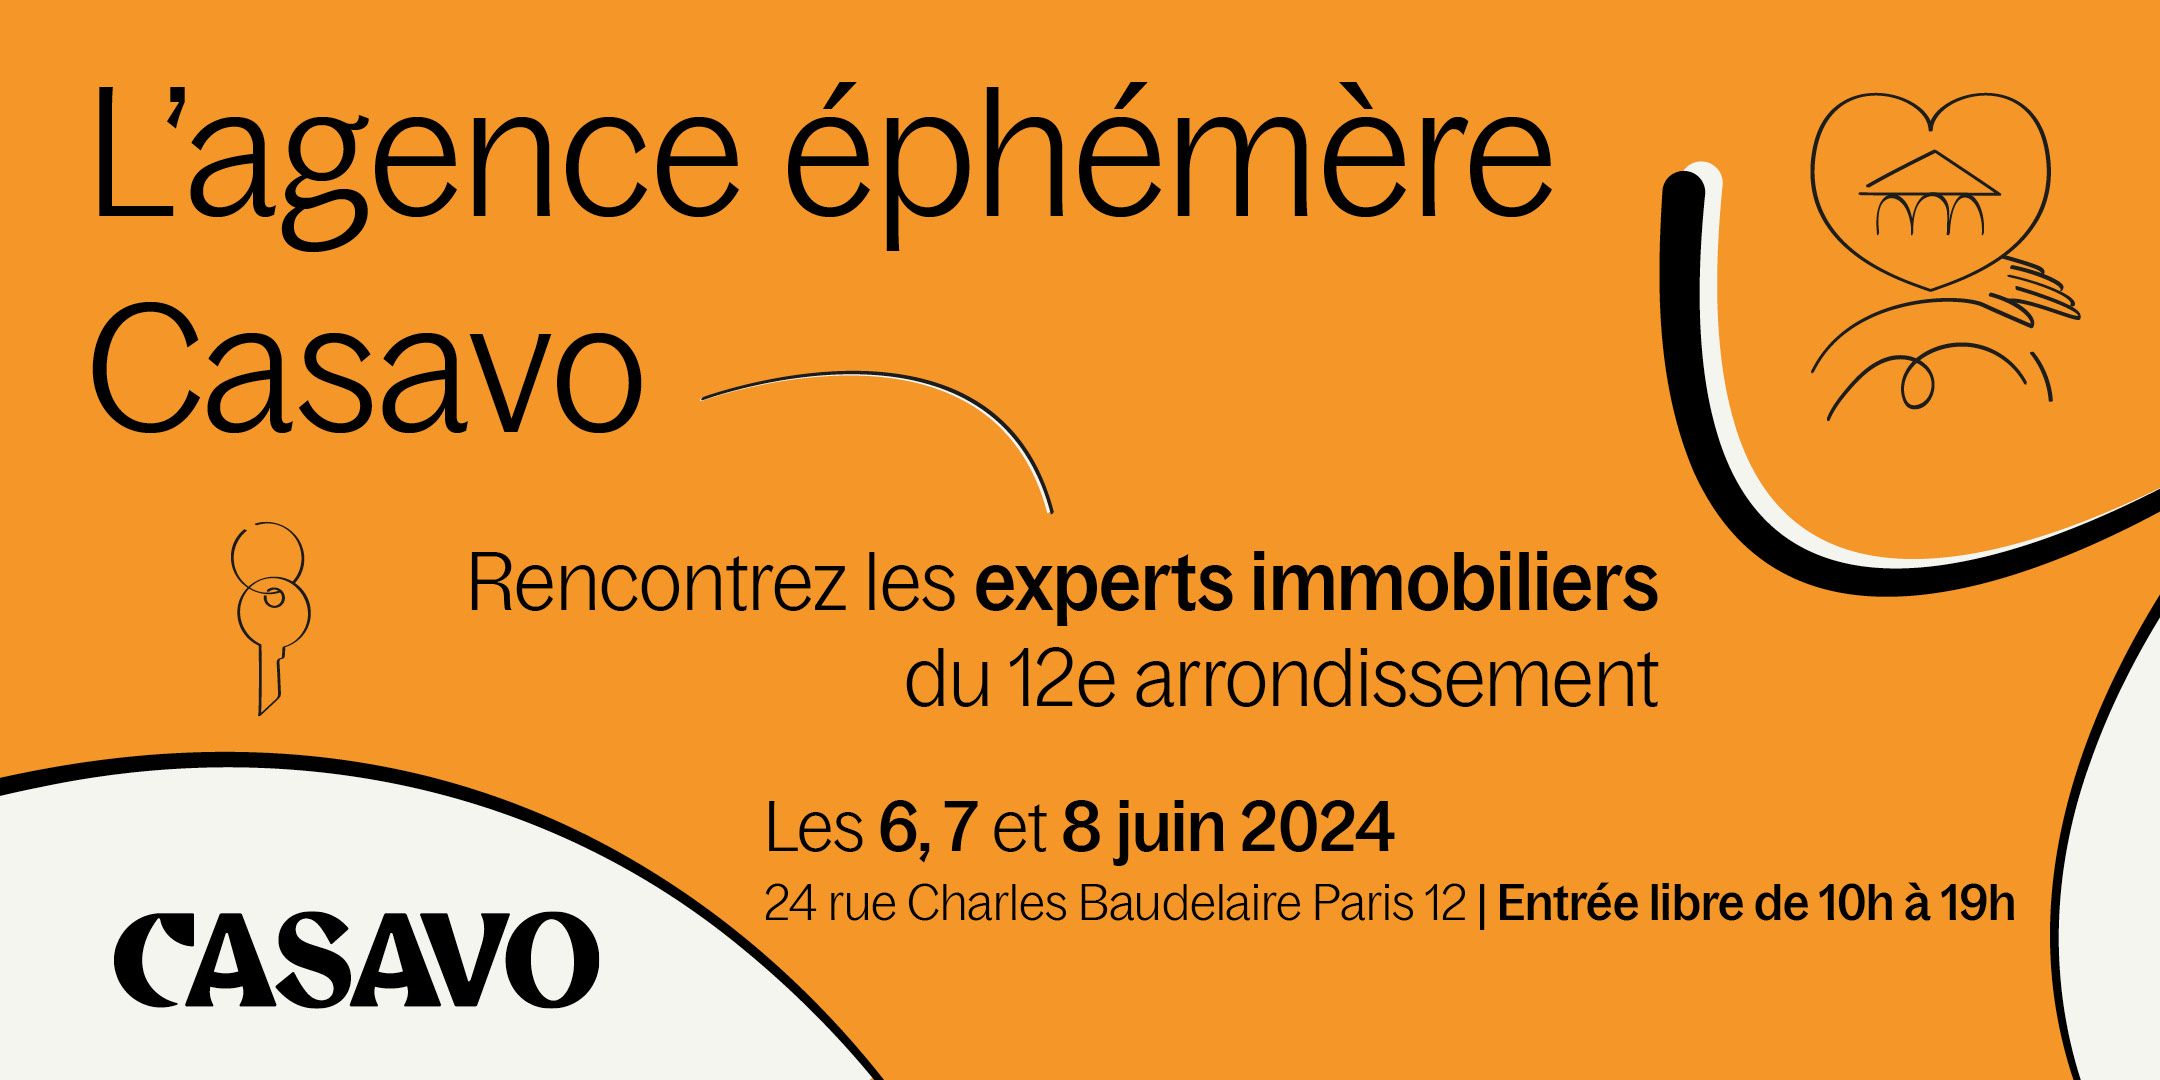 Casavo ouvre une agence éphémère les 6, 7 et 8 juin 2024 à Paris 12